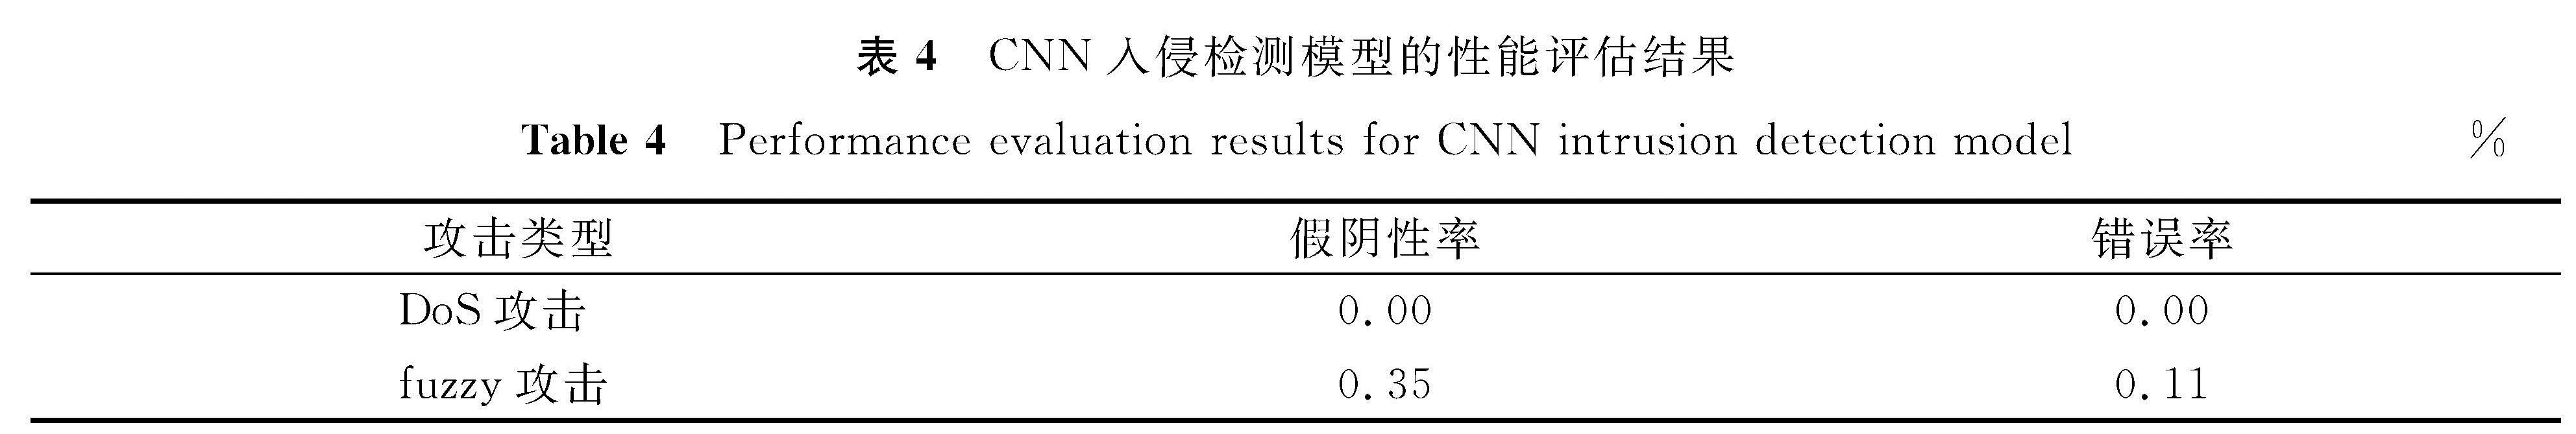 表4 CNN入侵检测模型的性能评估结果<br/>Table 4 Performance evaluation results for CNN intrusion detection model%